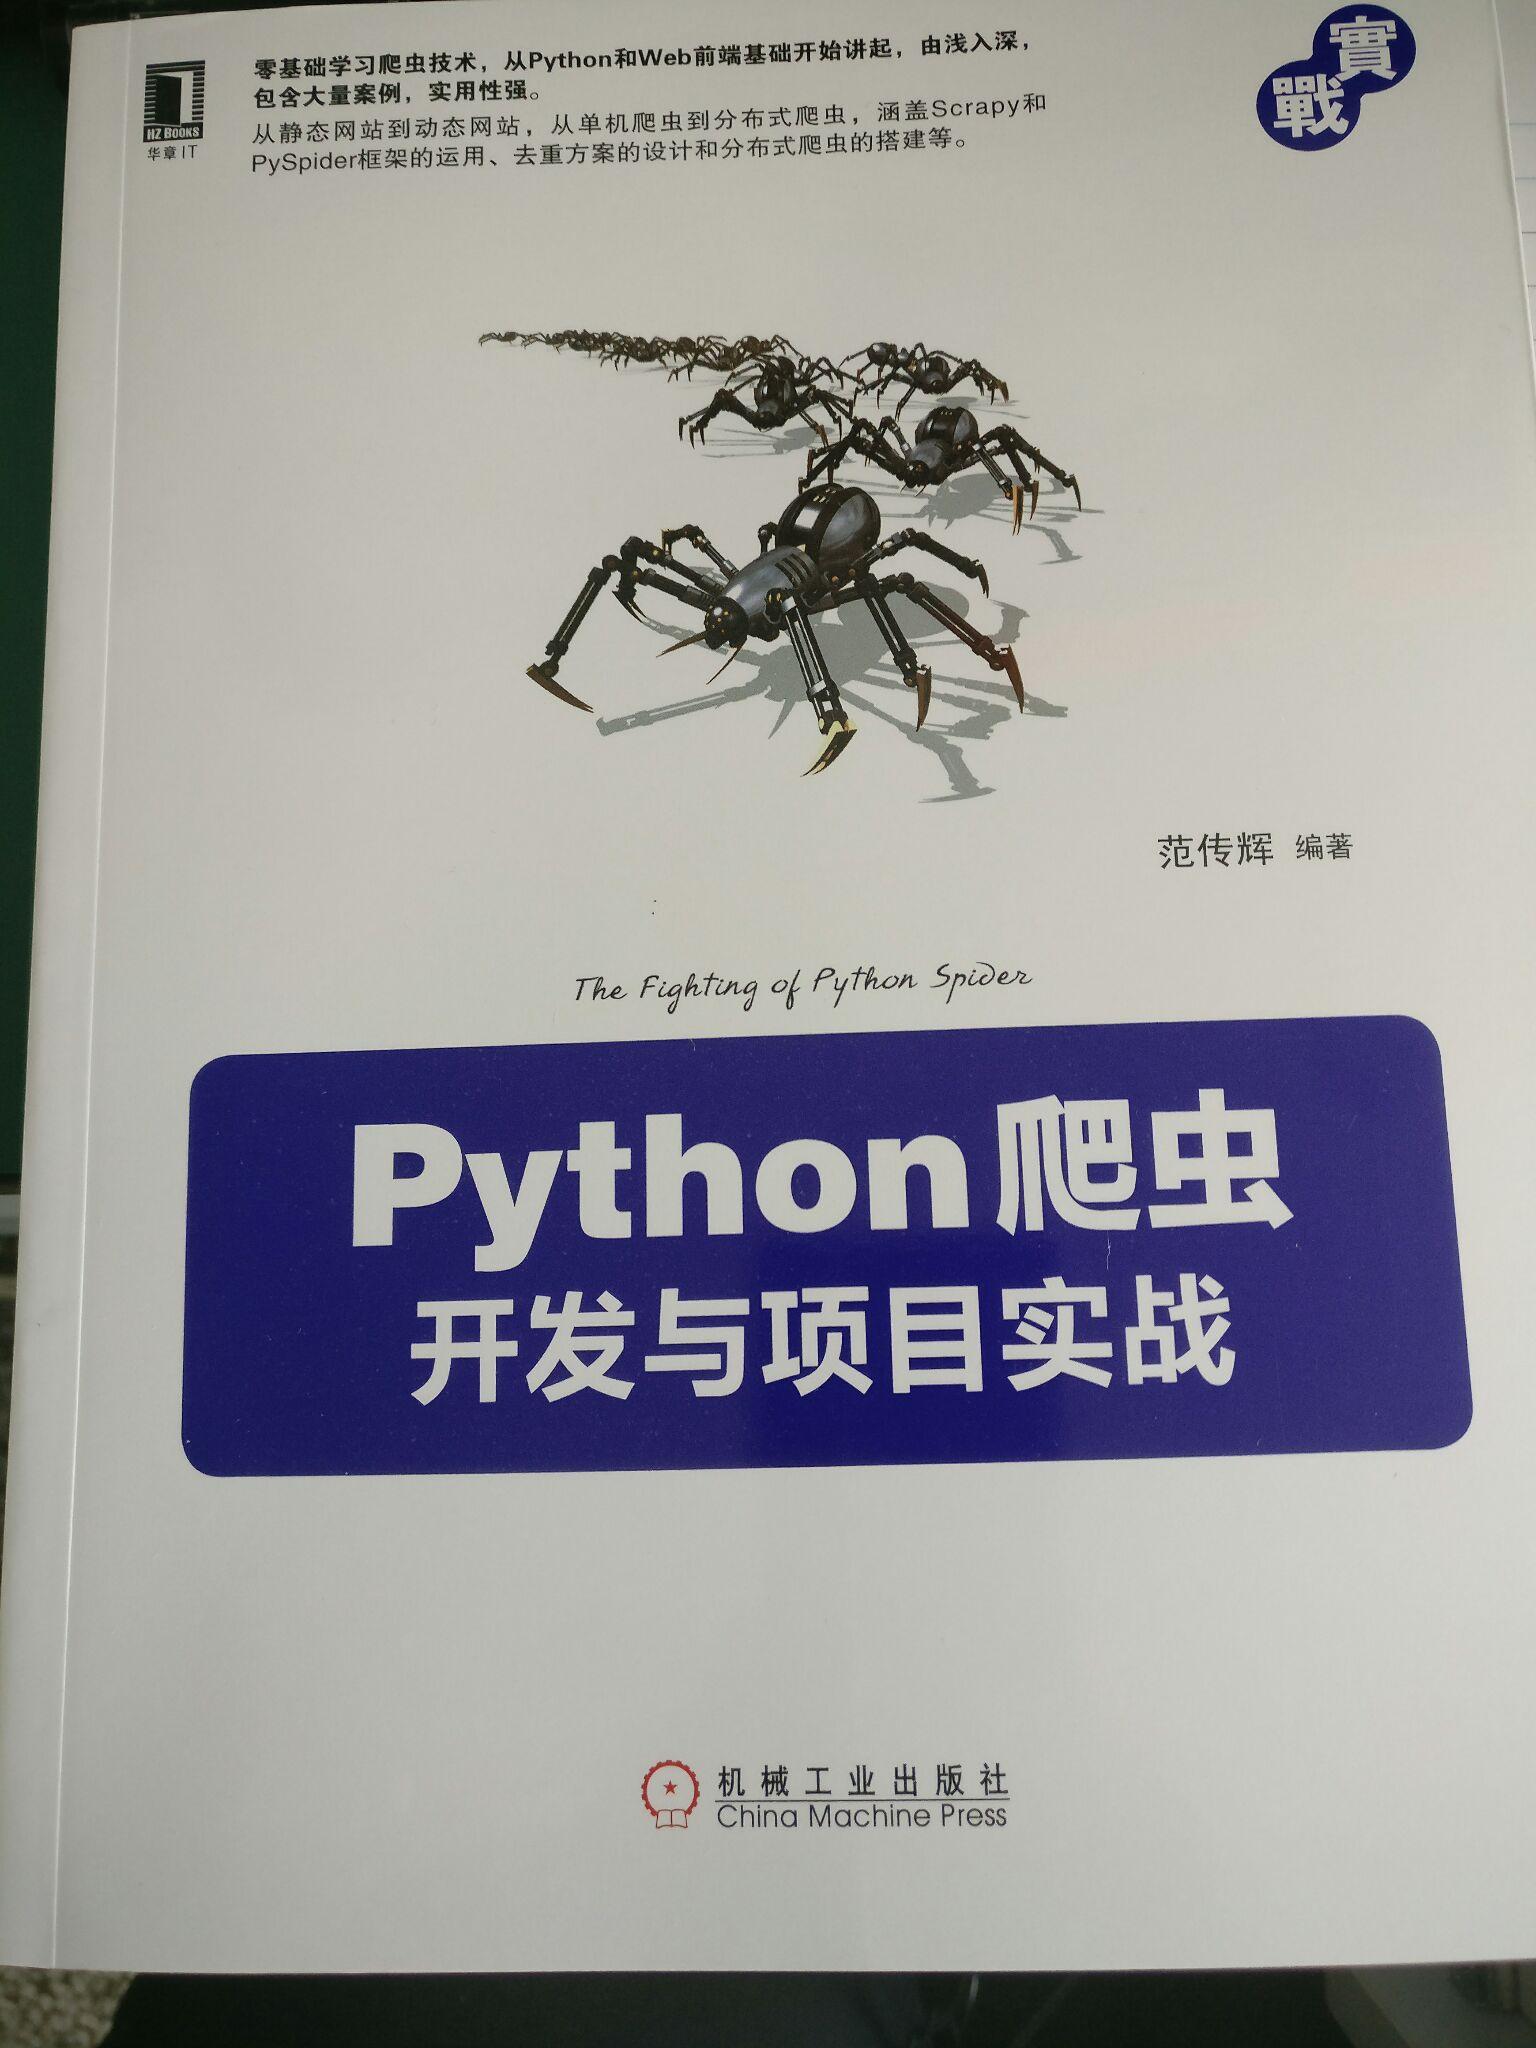 推荐一本python web开发书籍和python爬虫开发